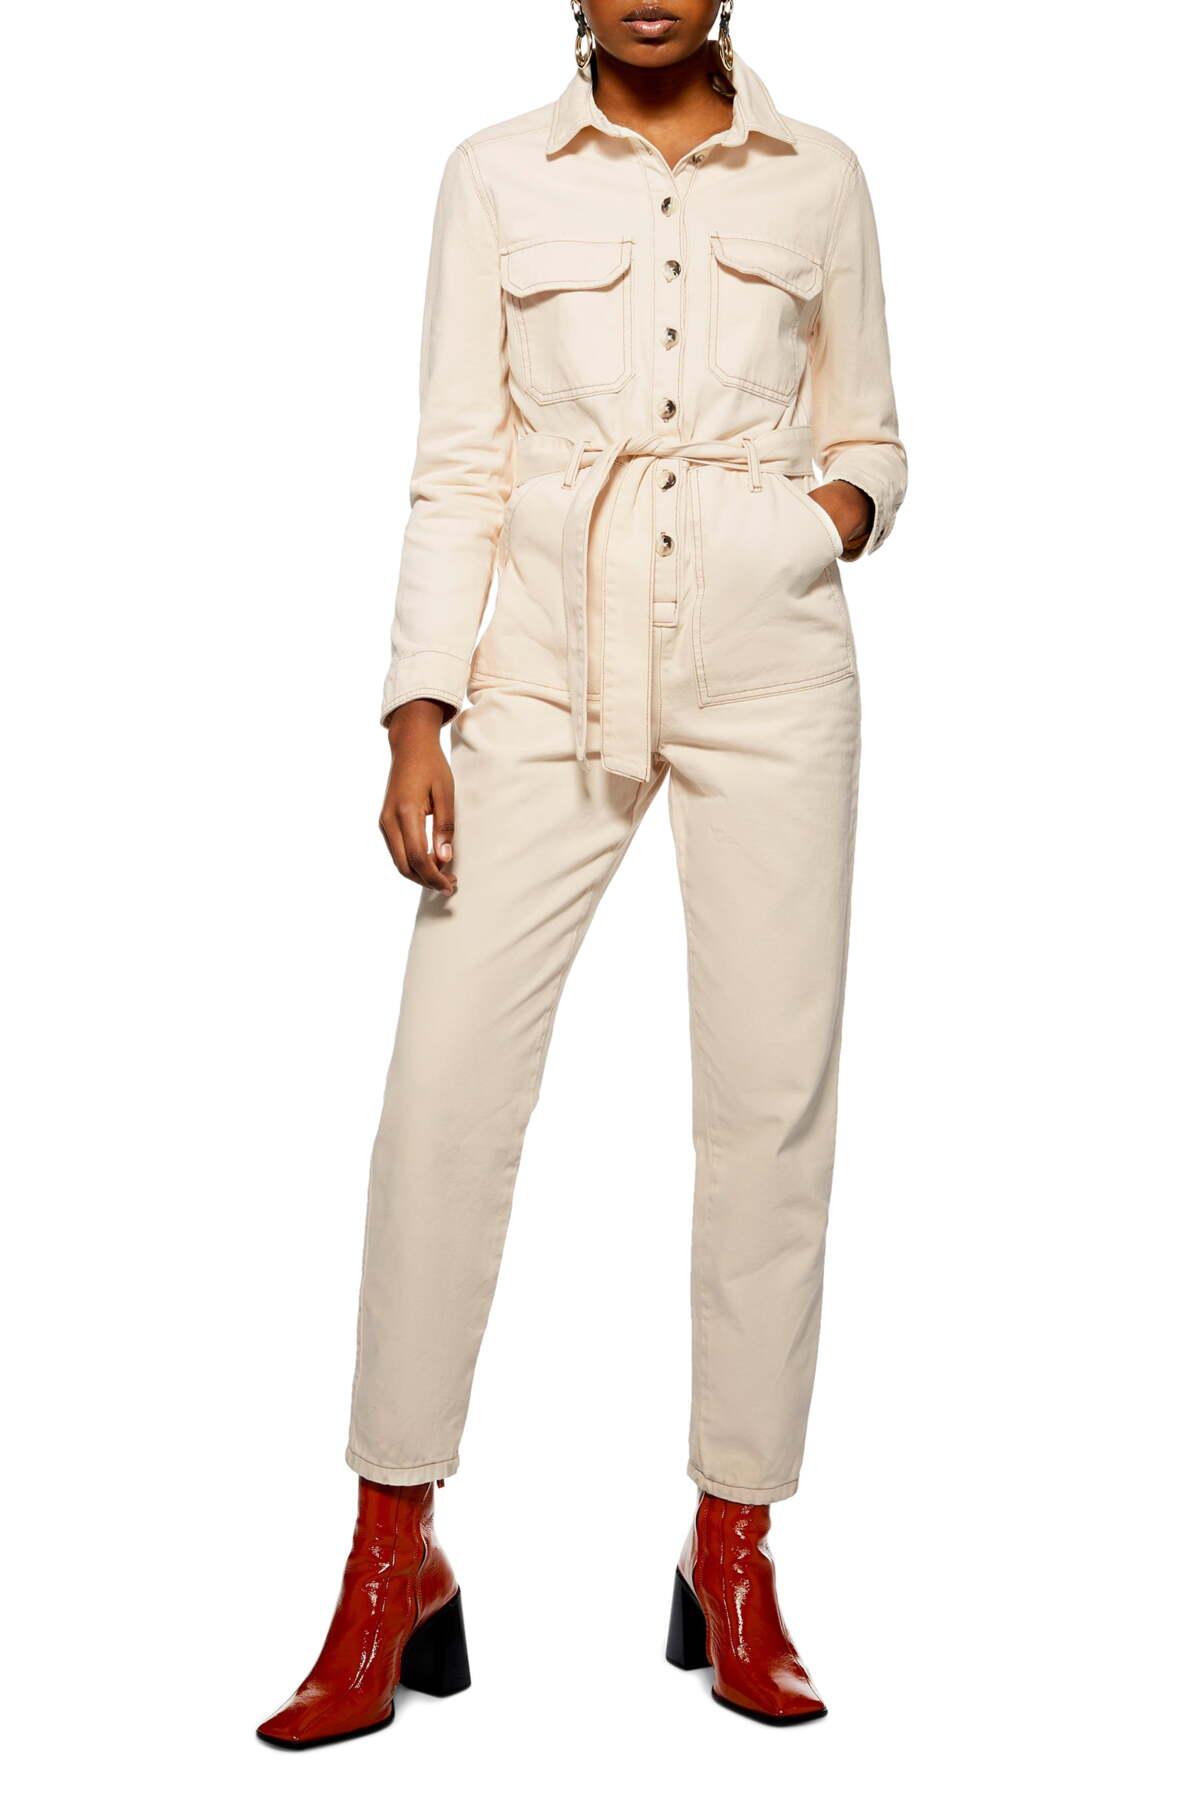 TOPSHOP Denim Boiler Suit in Cream (Natural) - Lyst